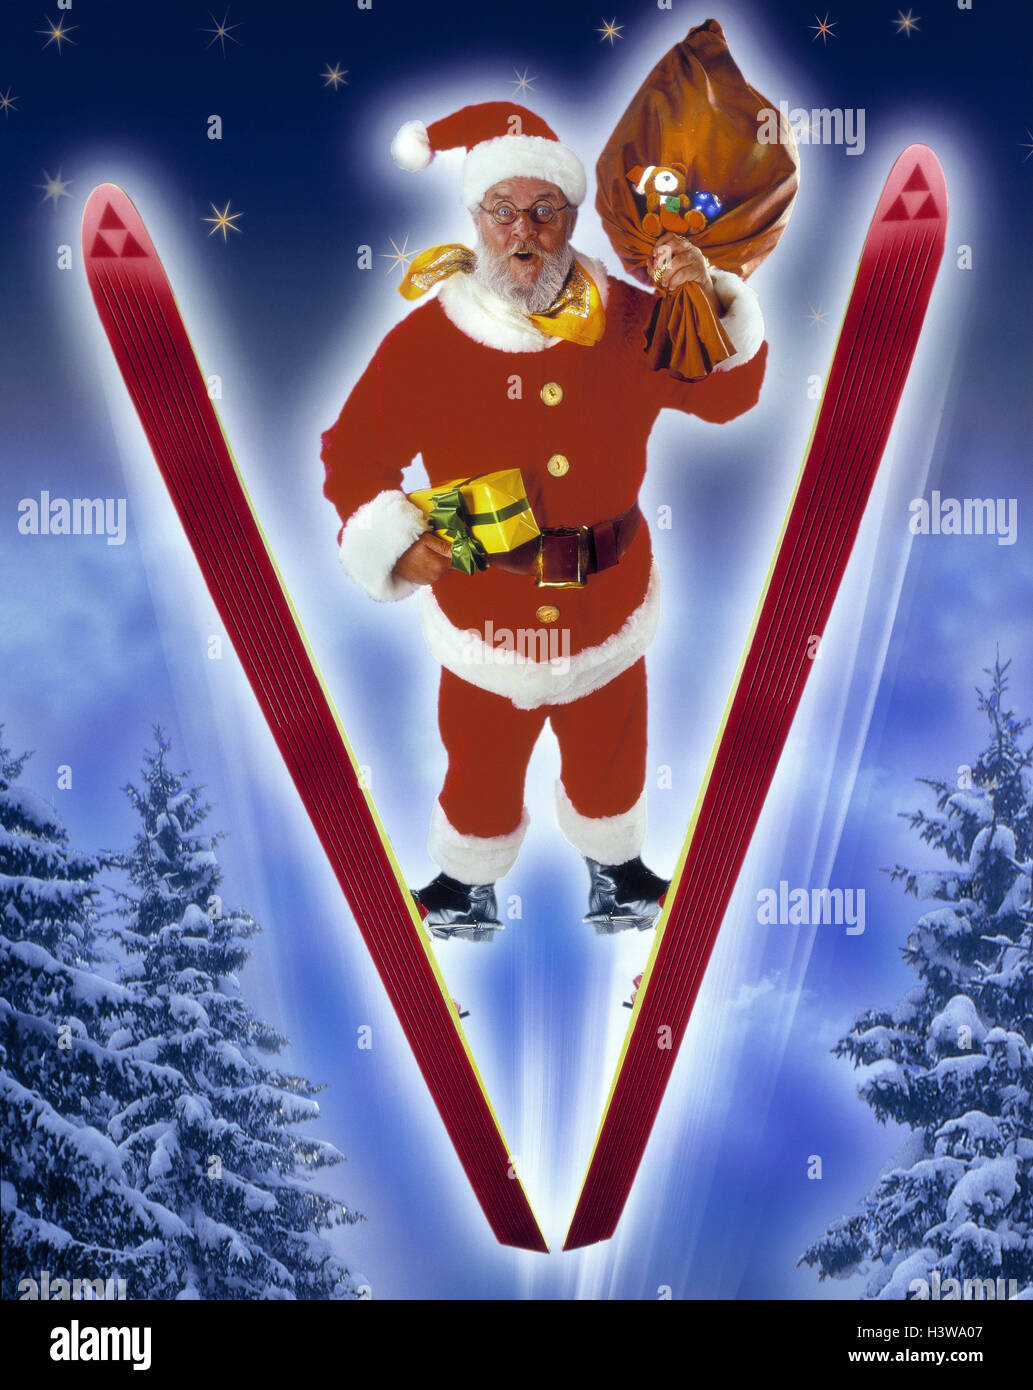 Santa Claus, Weihnachtsmann Beutel, präsentieren, Skispringen, [M], Atelier, komponieren, sternenklaren Skystarry Skystarry Himmel, Bäume, Santa, pouch, Weihnachten, Vertrieb Geschenke, Lieferung, Ski, Ski, fliegen, springen, Sprung Stockfoto